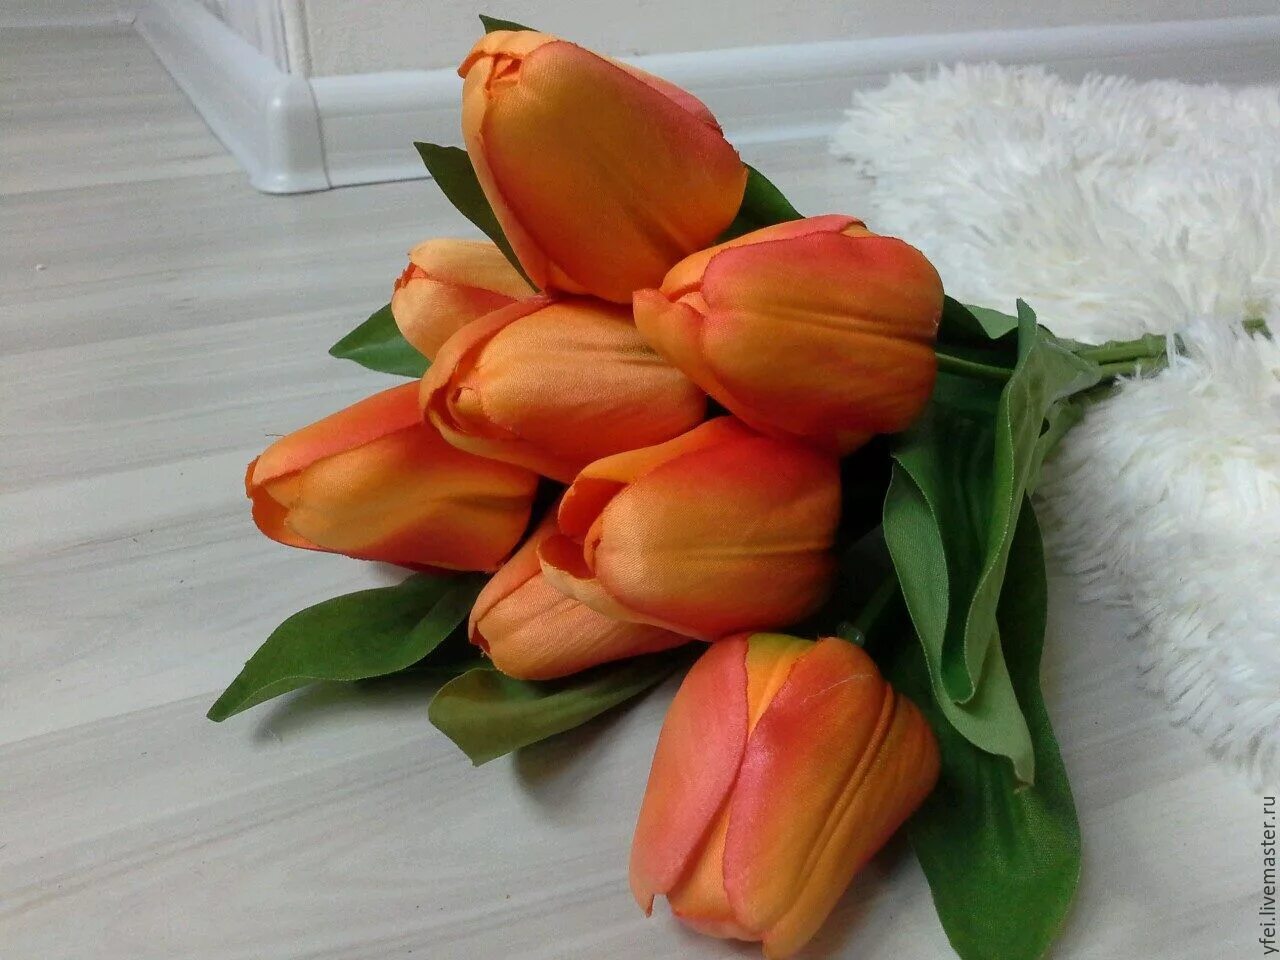 Купить тюльпаны в подольске. Тюльпаны из силикона. Тюльпан Альбатрос. Тюльпаны Новосибирск. Цветы тюльпаны из силикона штучные.